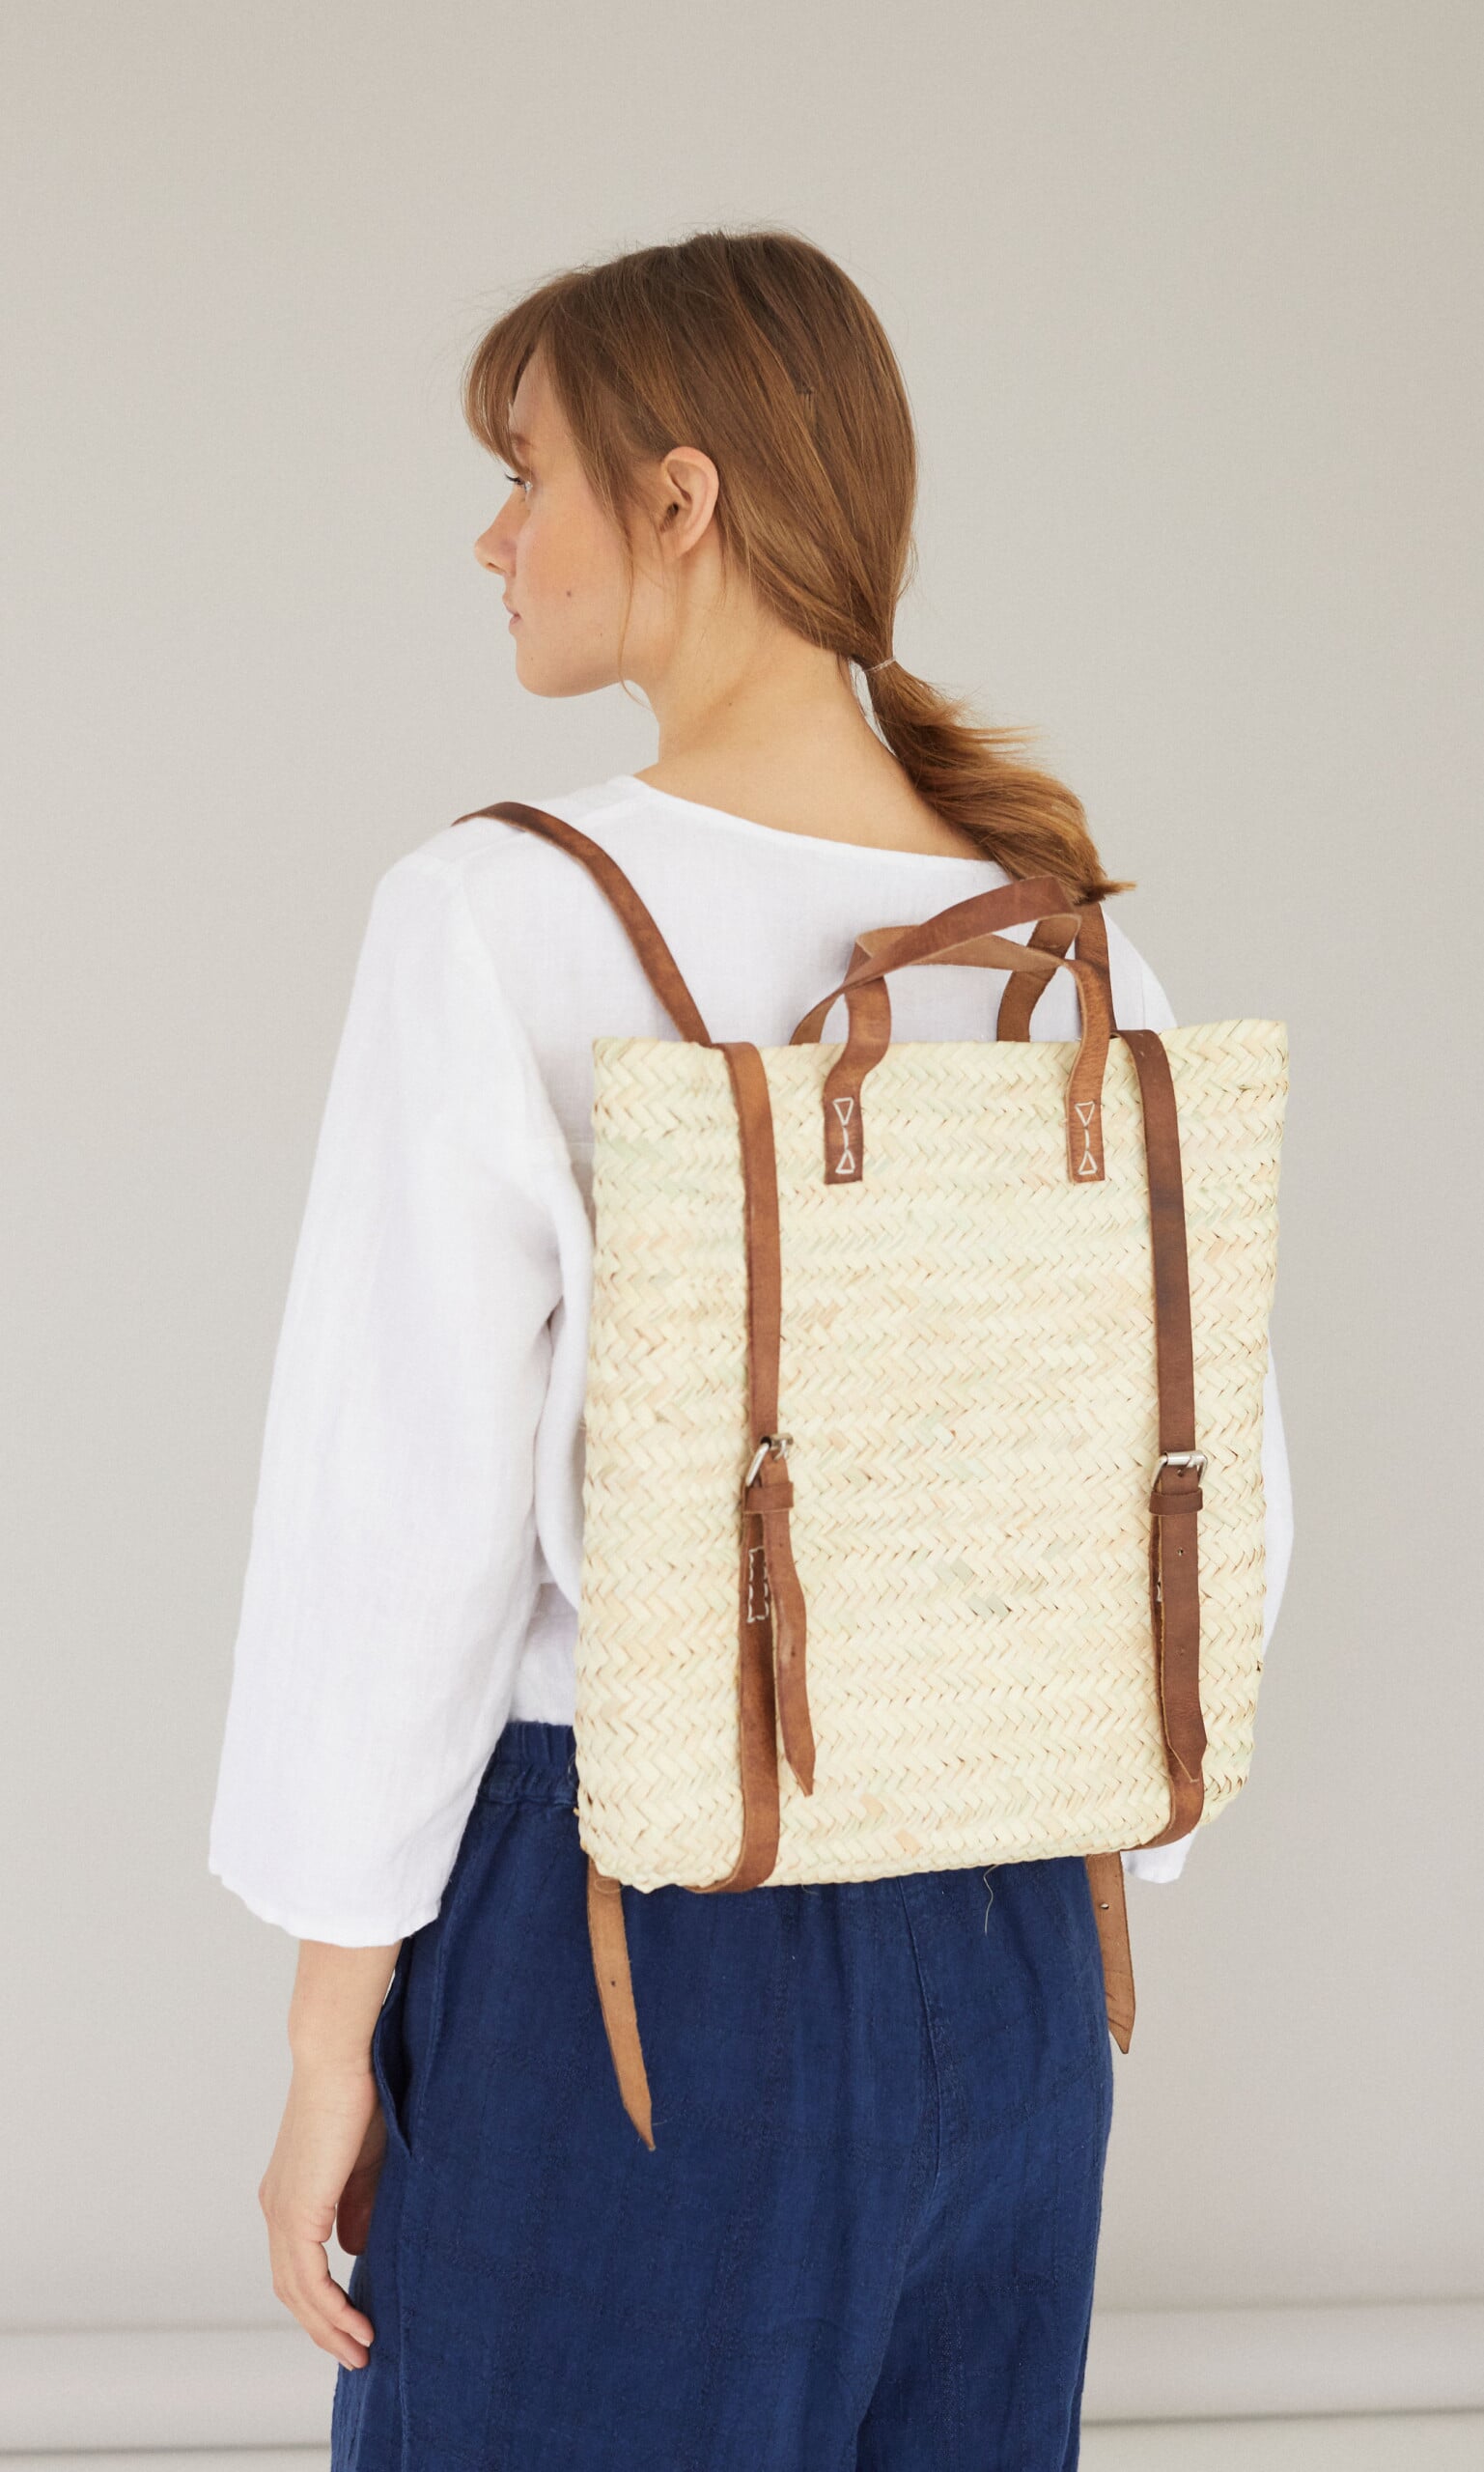 Wicker satchel backpack - Plümo Ltd